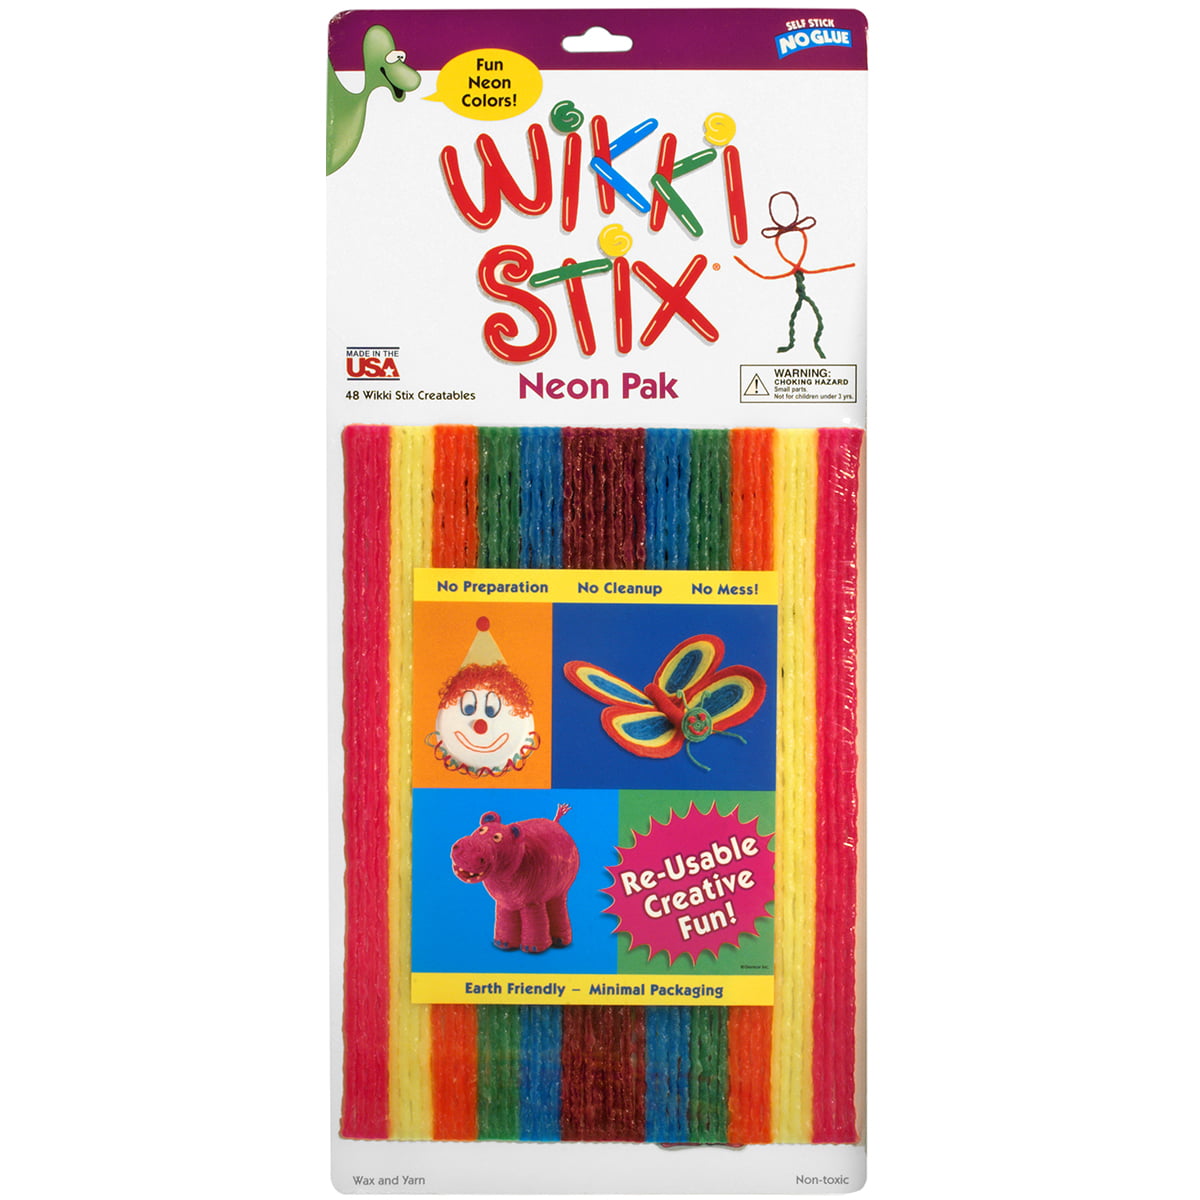 Wikki Stix Neon Pack 